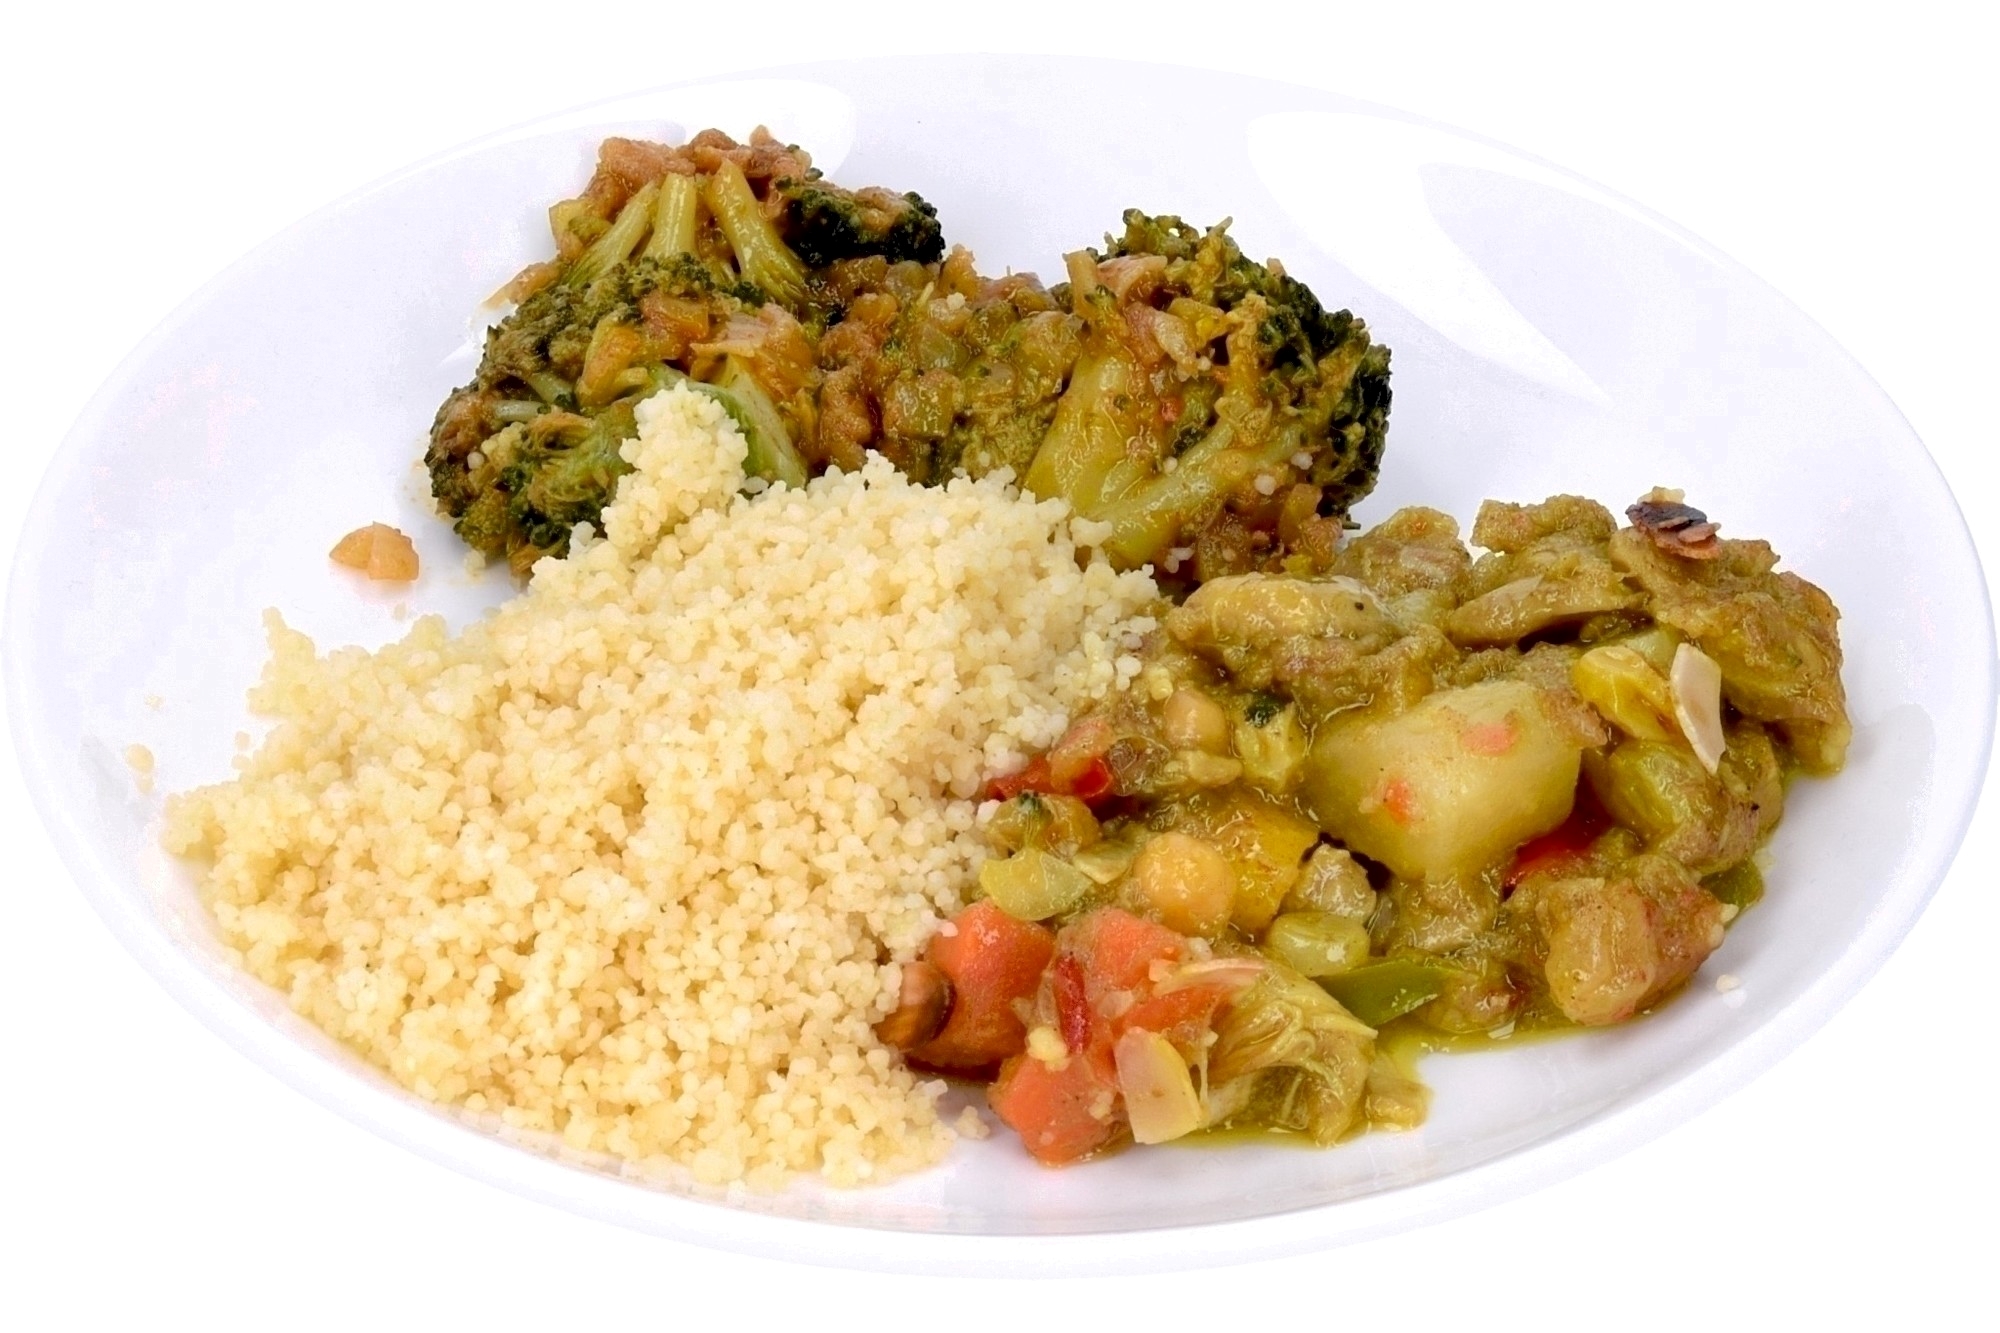 Kiptajine met couscous en broccoliroosjes (605056)